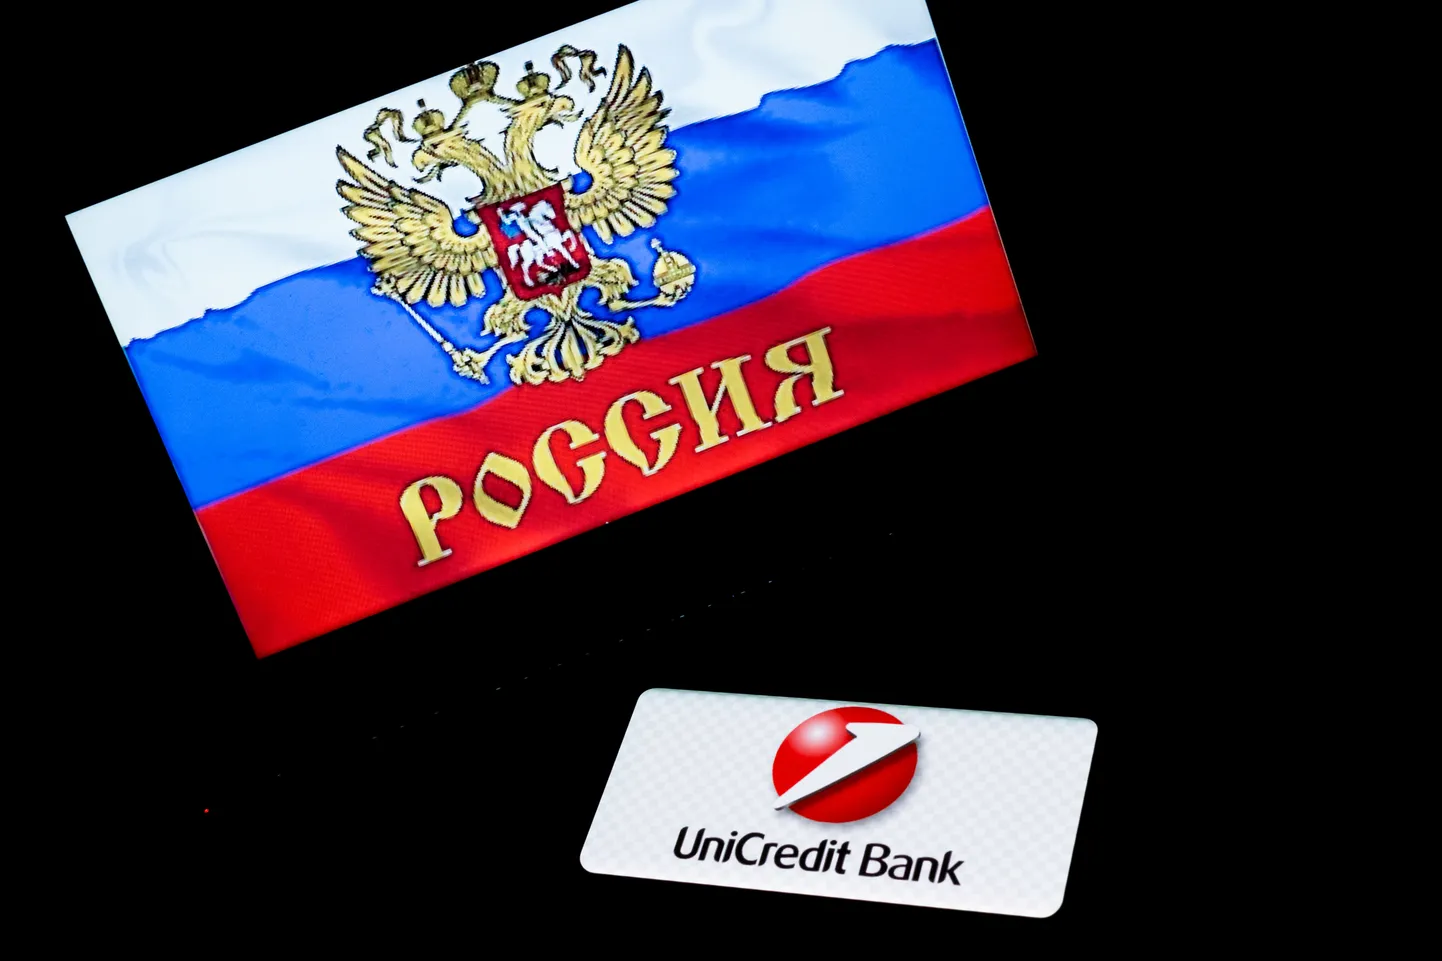 Unicredit pole rahul, et keskpank nõuab neilt konkreetset Venemaalt lahkumise kava.